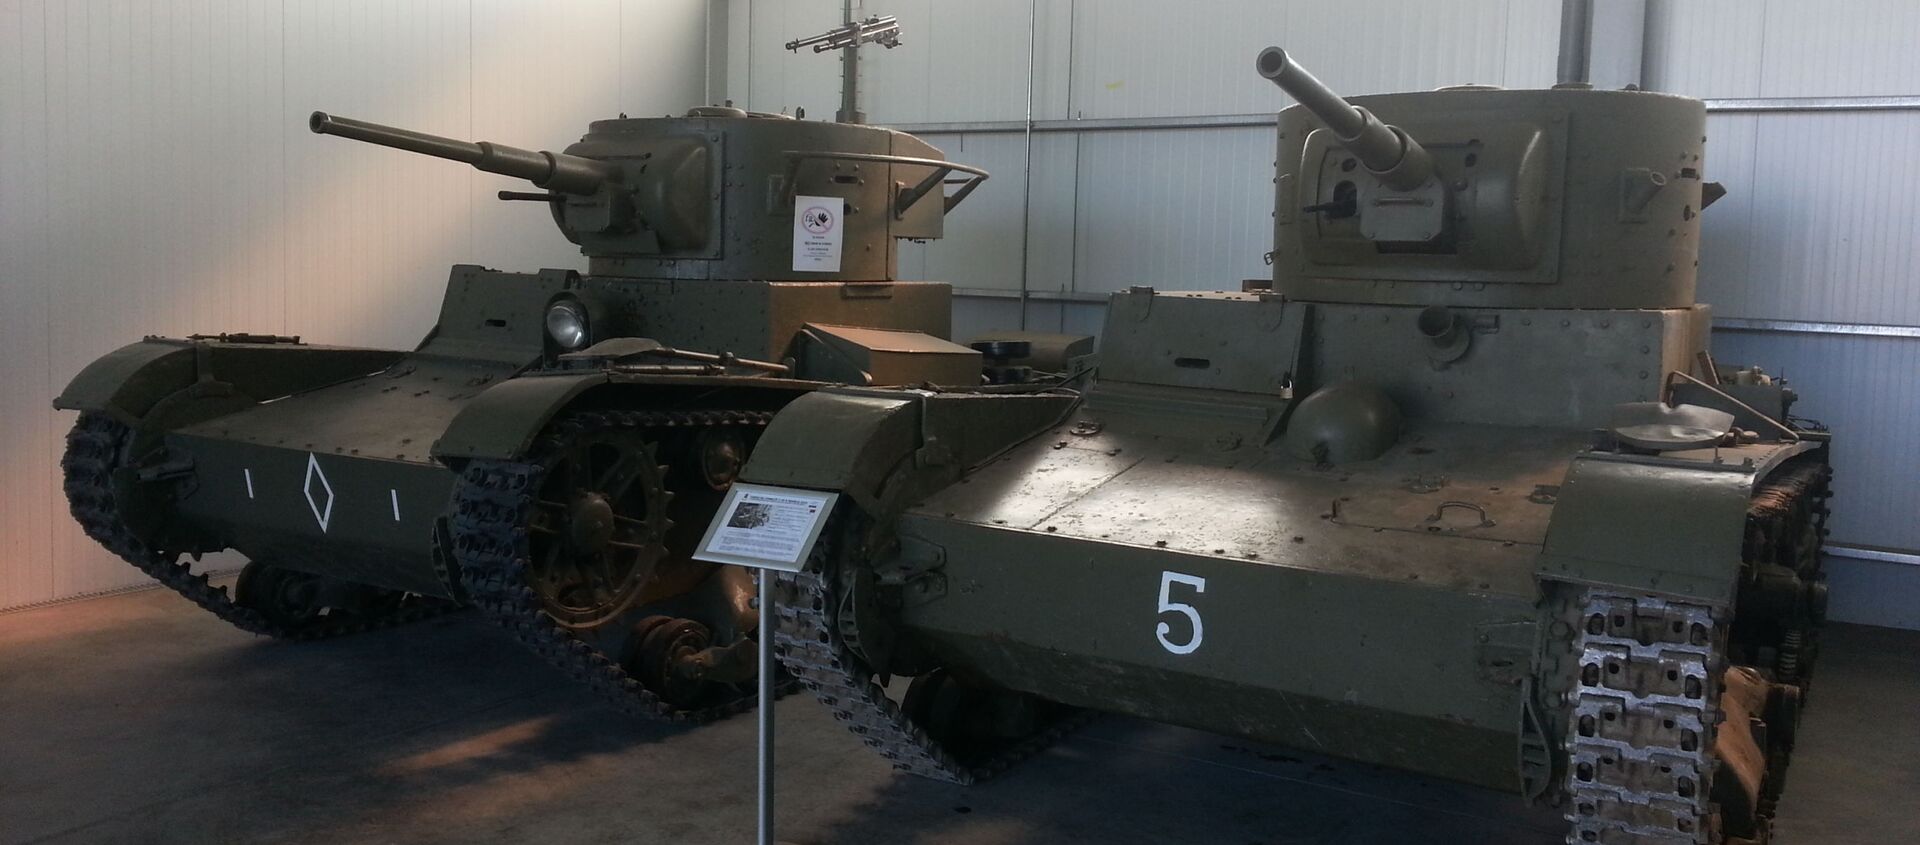 Танки Т-26, на которых воевали в Испании советские и республиканские танкисты, в экспозиции музея Эль-Голосо под Мадридом - Sputnik Latvija, 1920, 08.05.2020